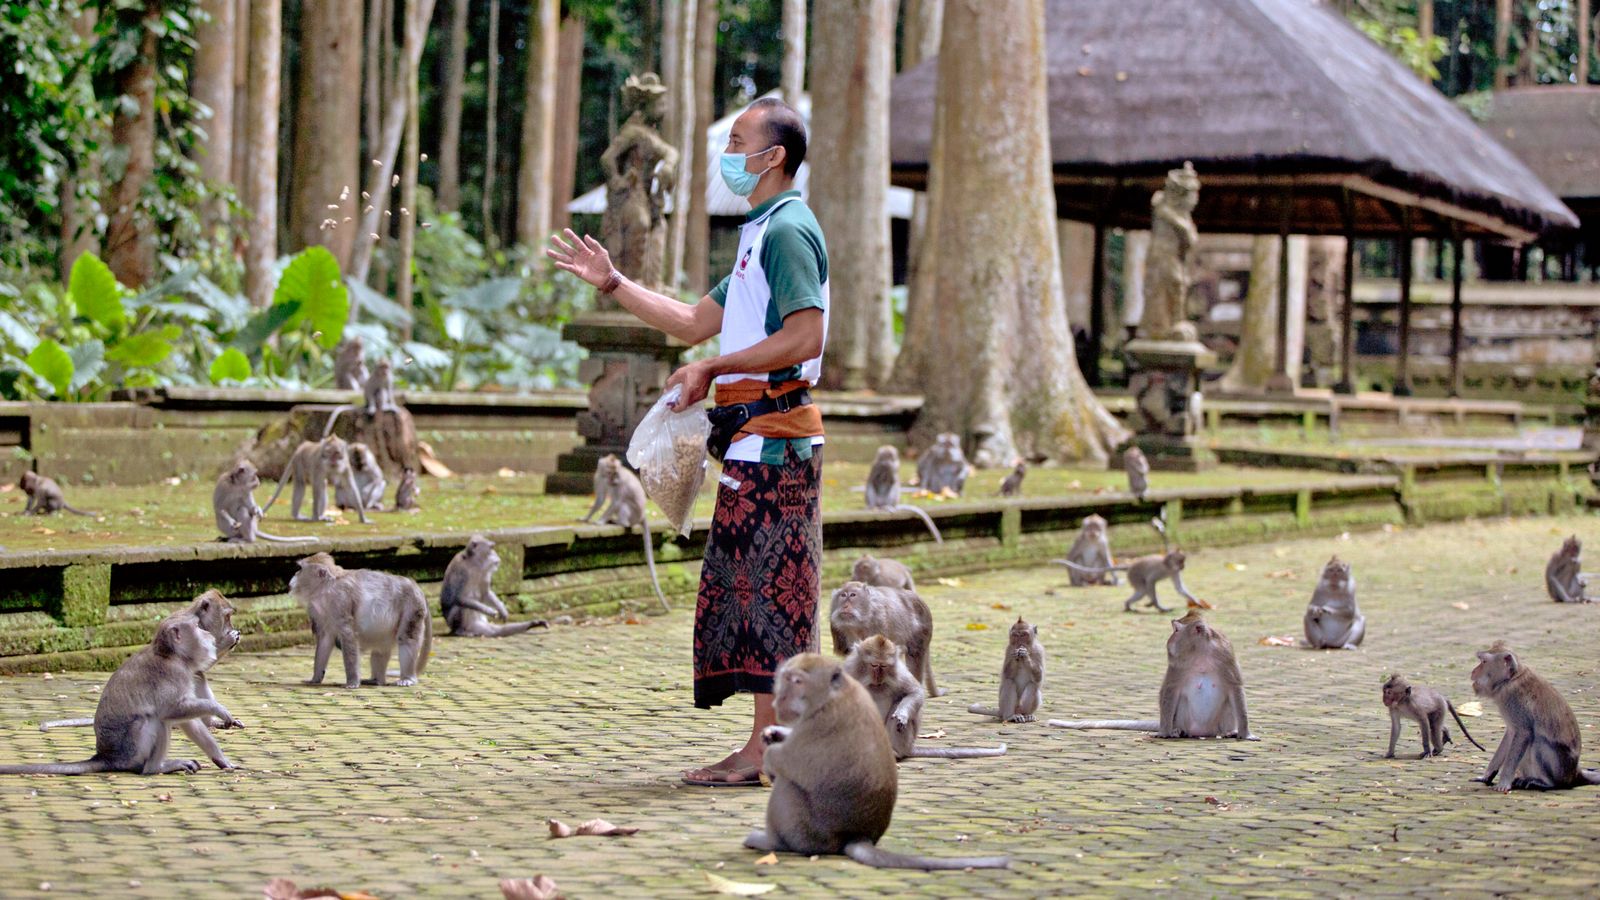 Khỉ Bali đột nhập vào nhà người dân do dịch Covid-19 - Ảnh 5.